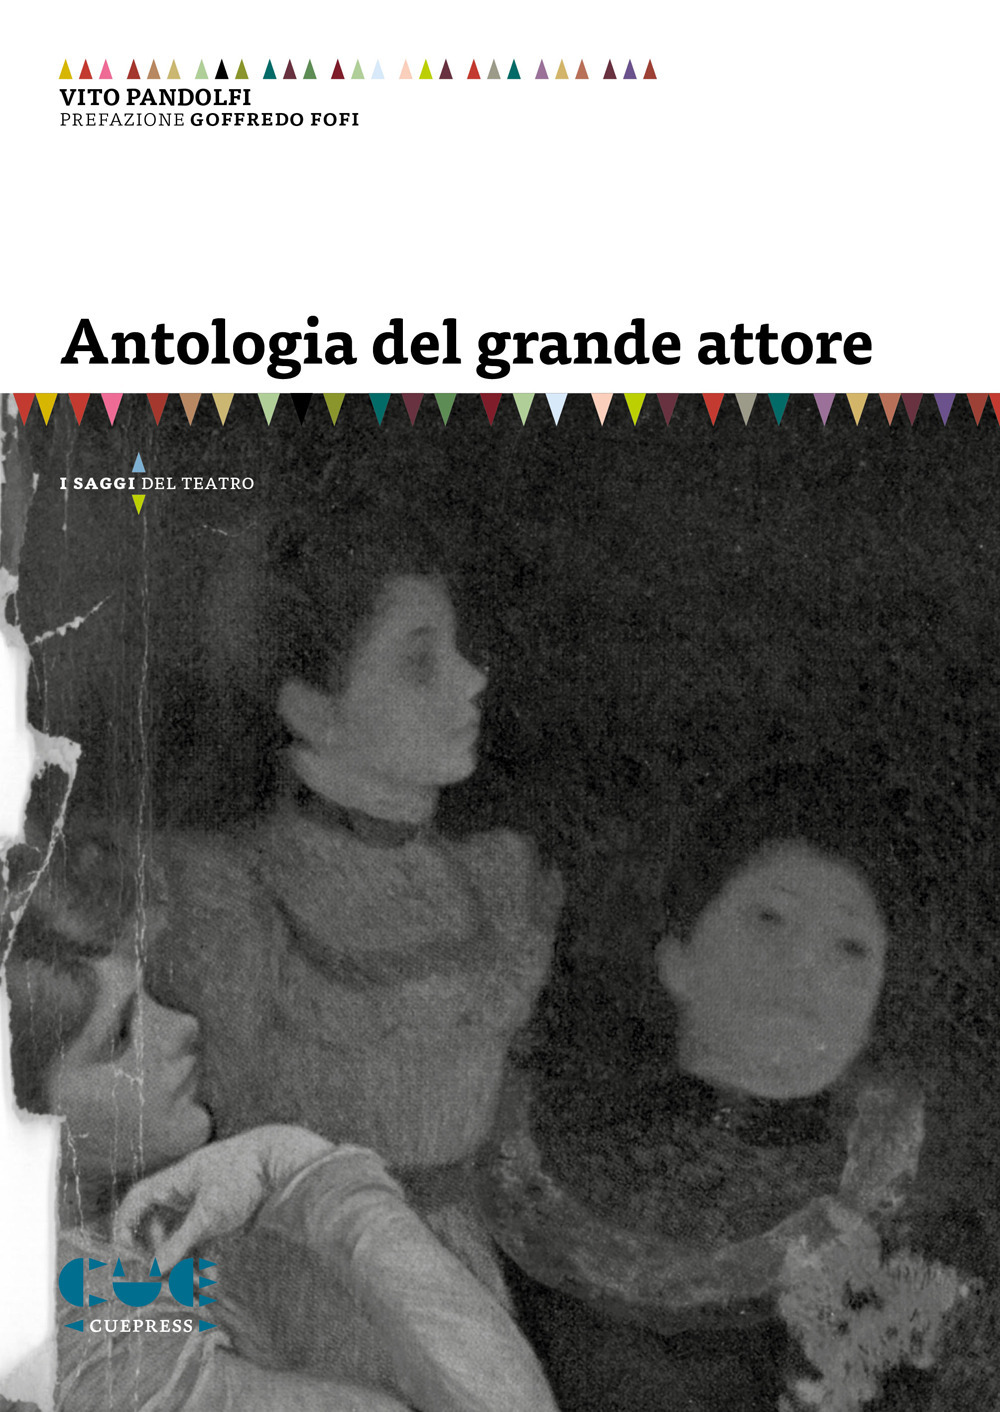 Image of Antologia del grande attore